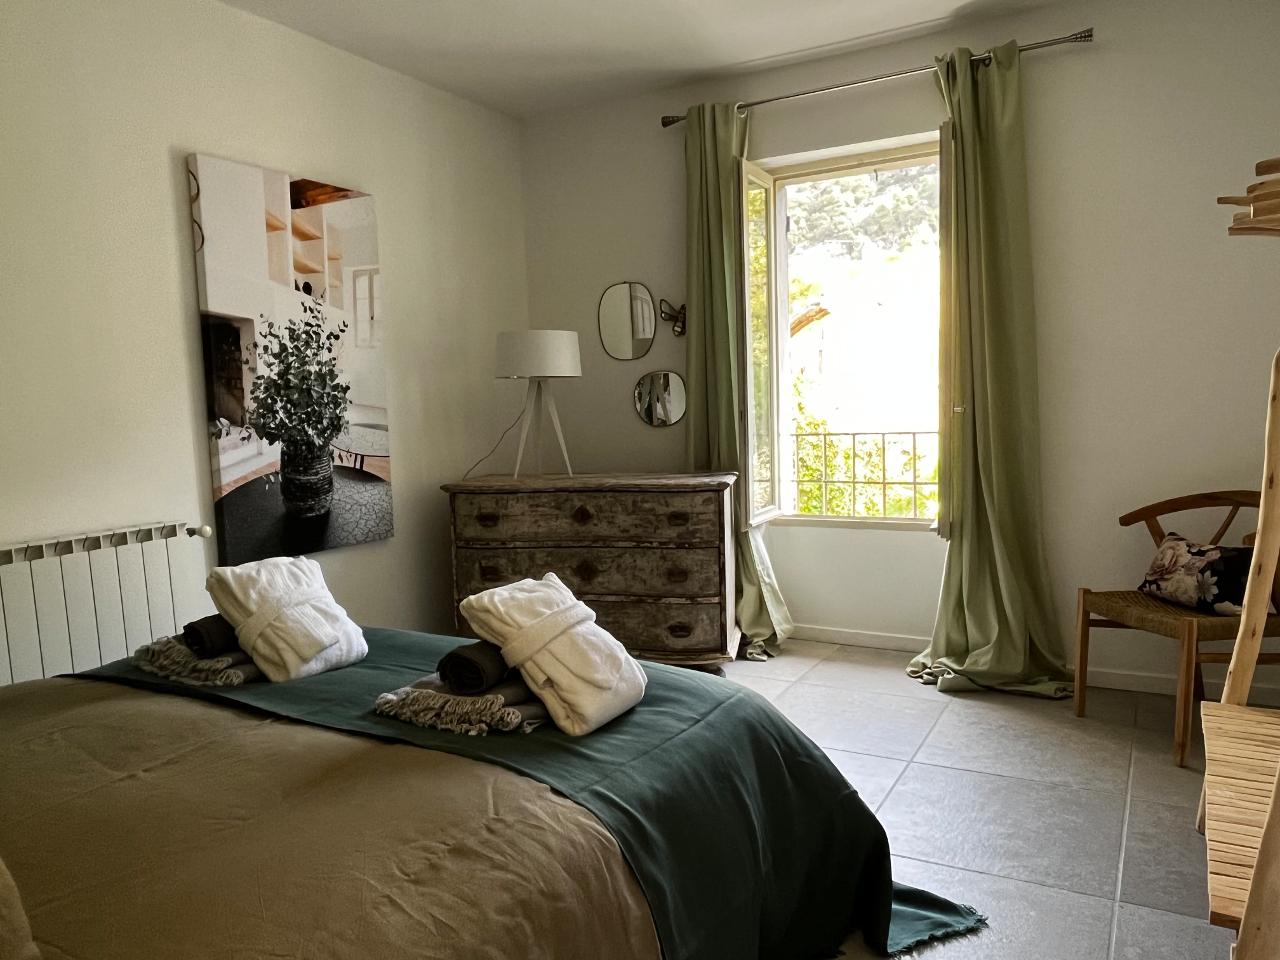 Hôte GreenGo: Le 52 en Provence - Chambres d’hôtes dans Authentique Mas de Village avec Piscine - Image 6